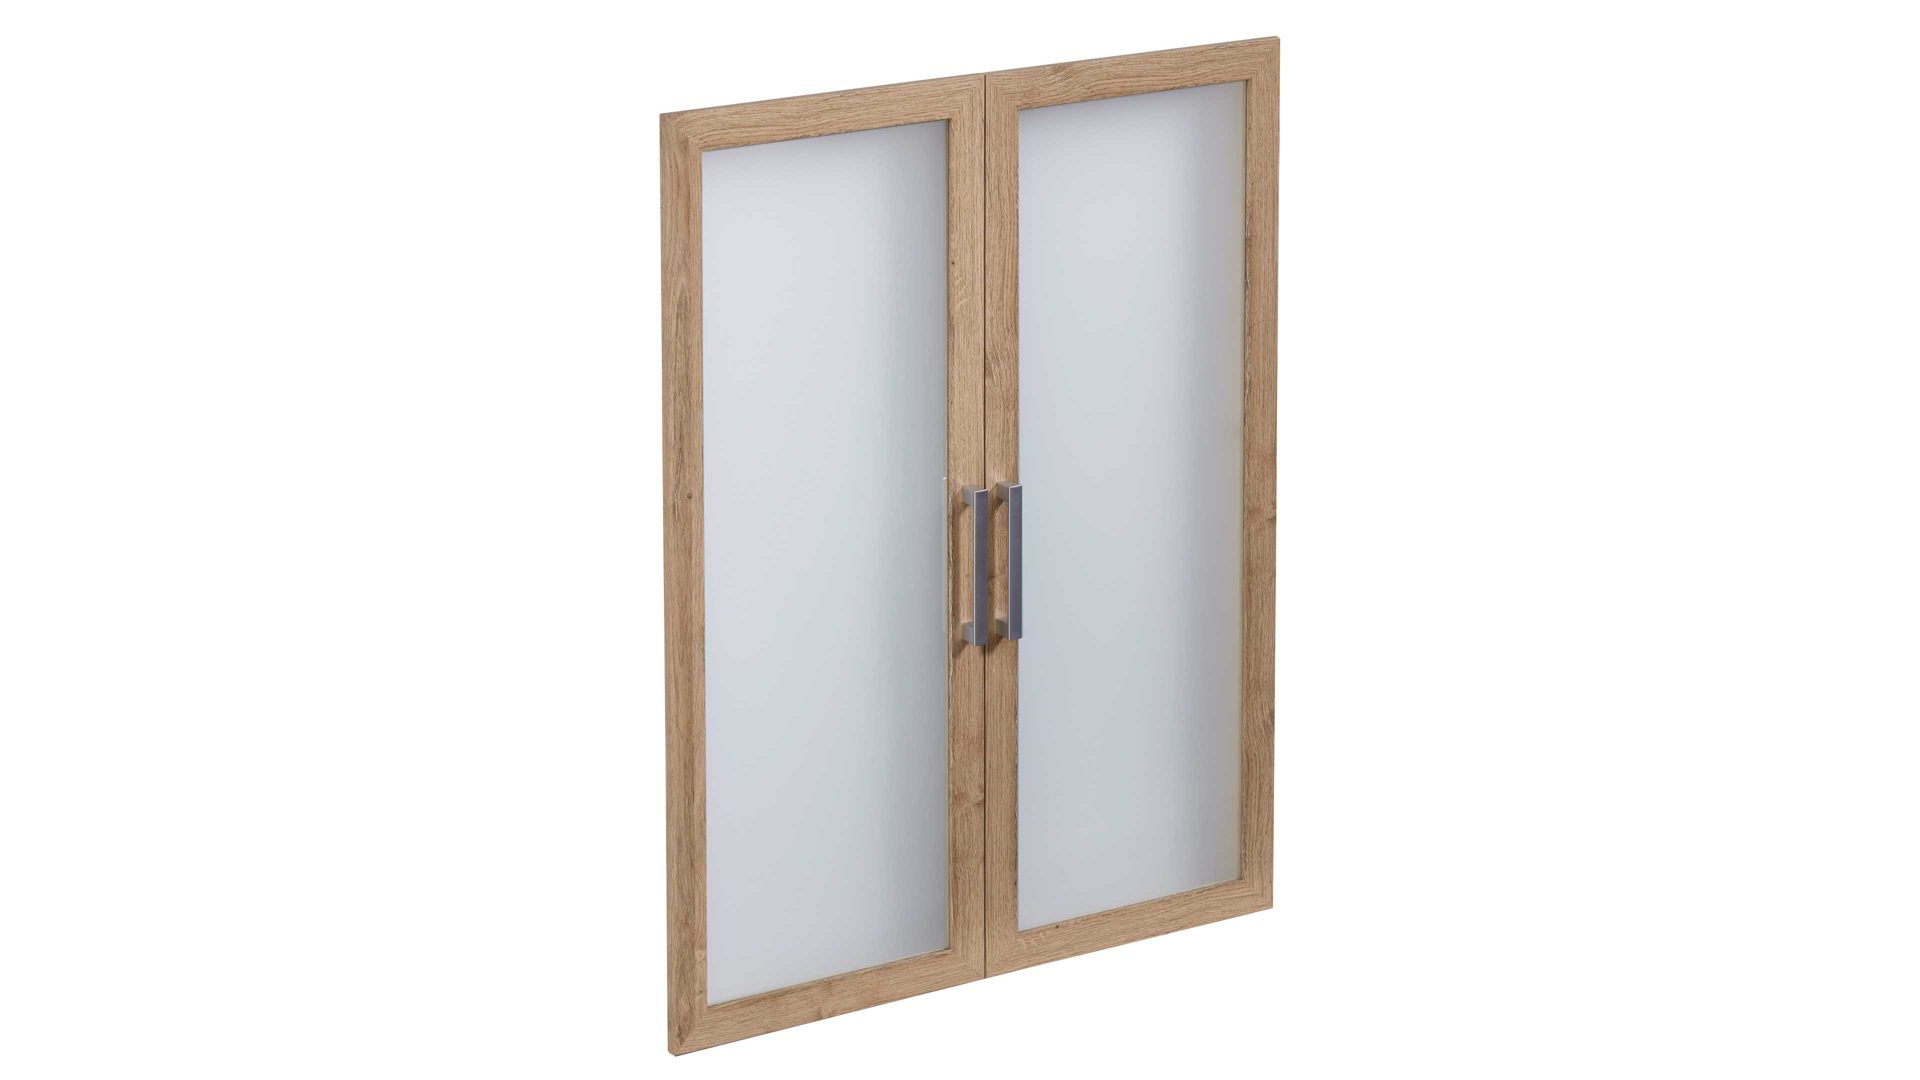 Türen-Set Fmd furniture aus Glas in Holzfarben Glastüren-Set alteichefarbene Kunststoffoberflächen – zweiteilig